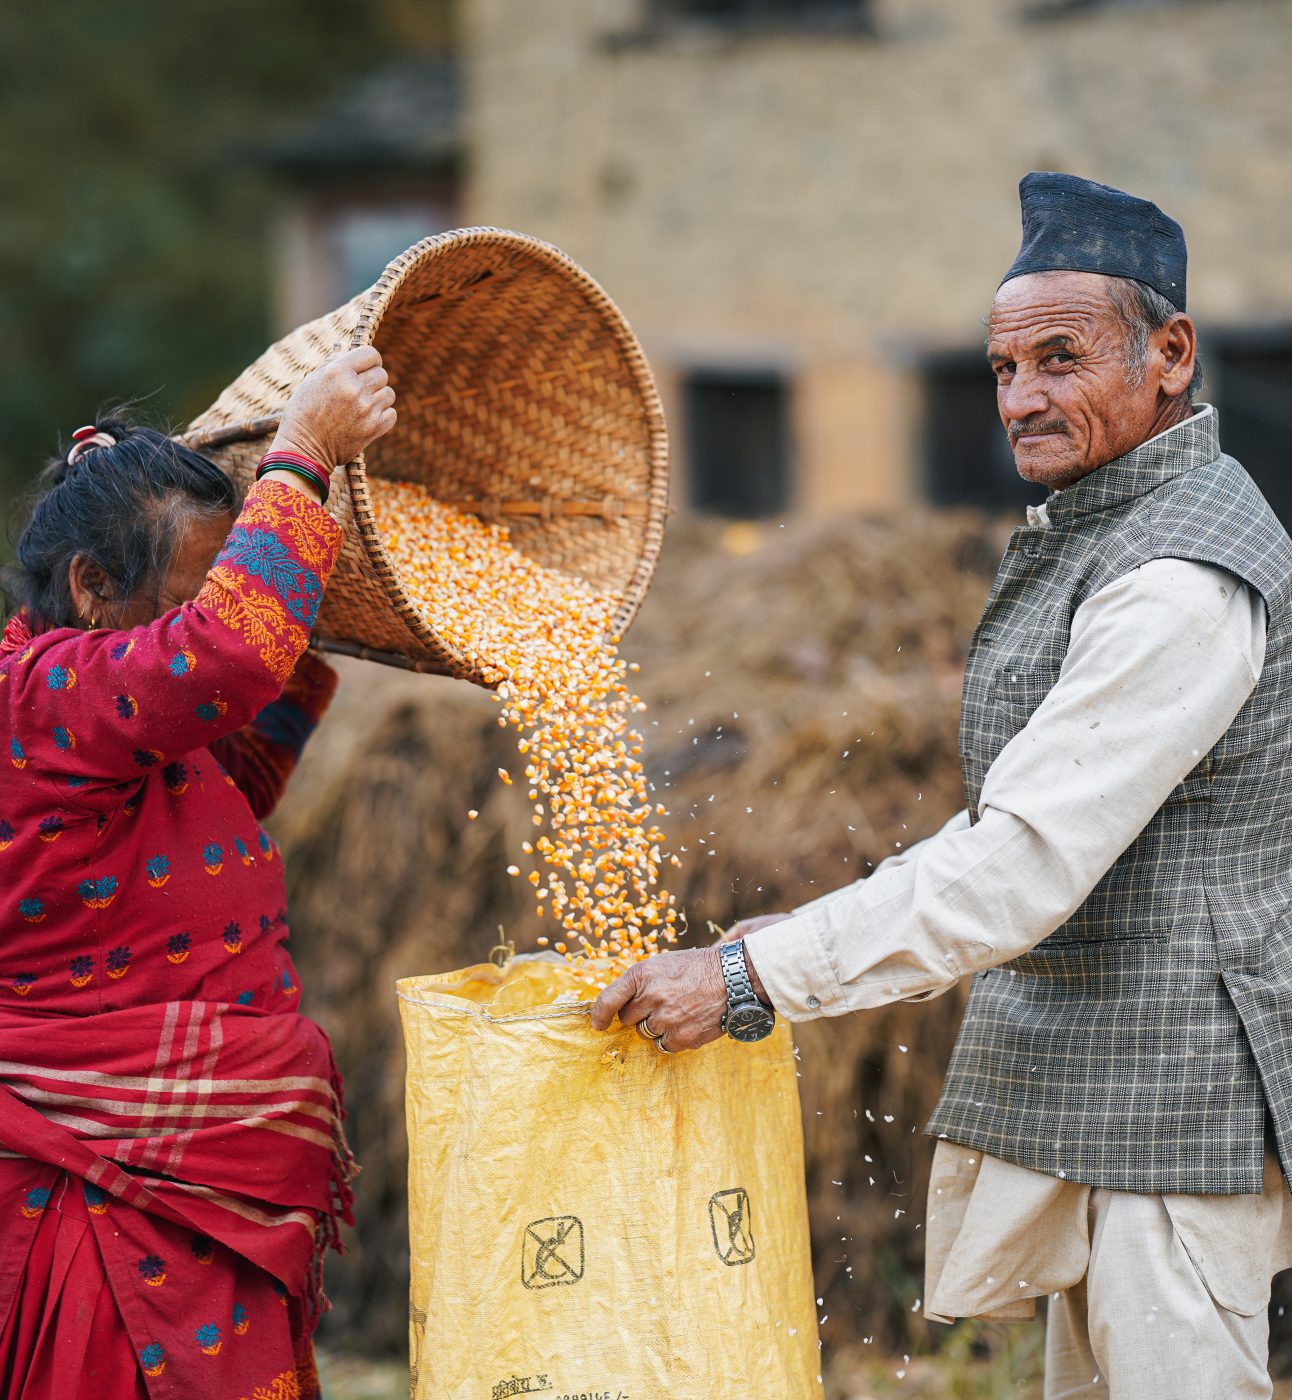 Older people working in Nepal